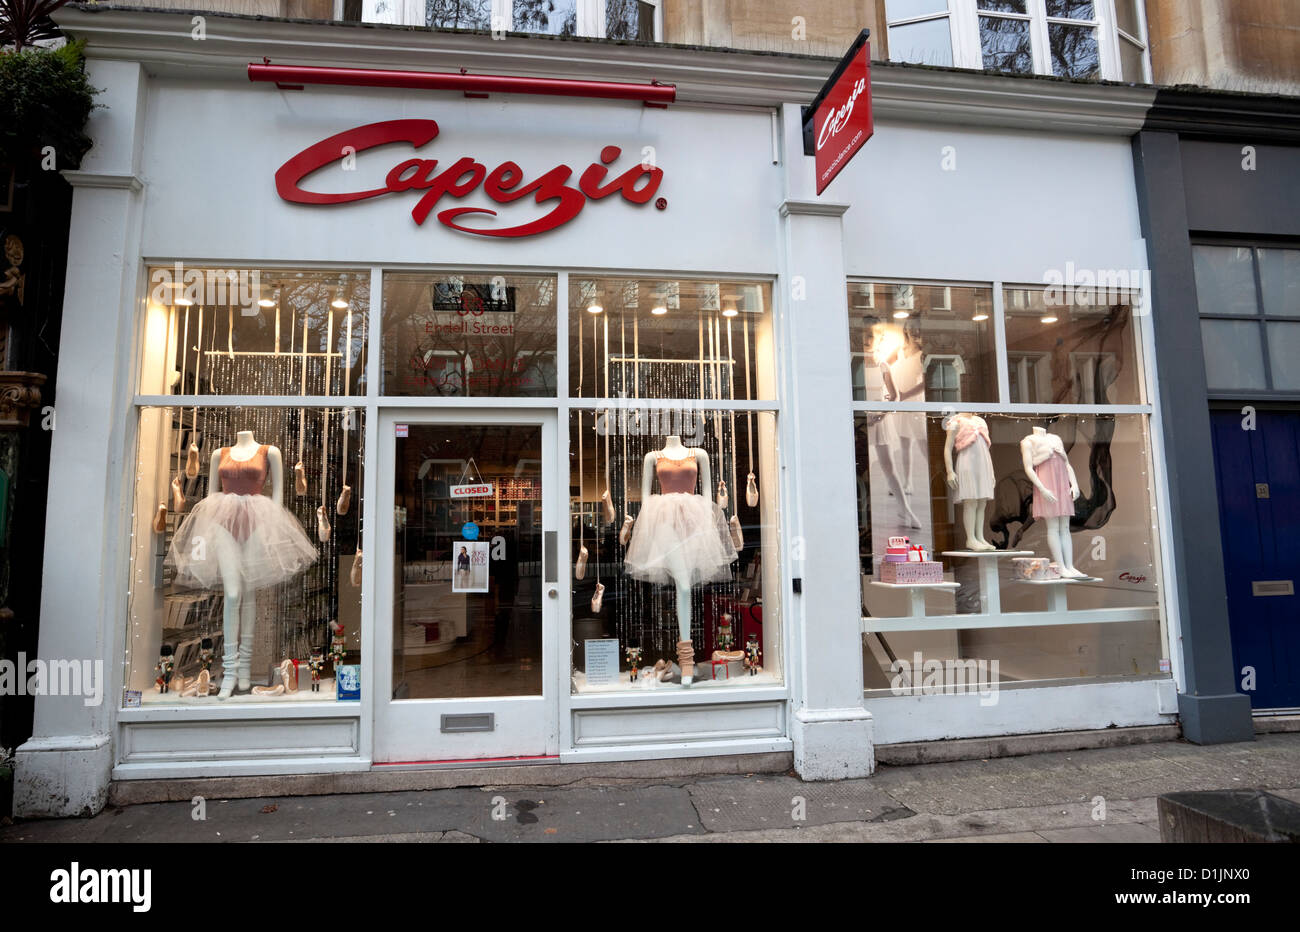 Capezio, dancewear store, Covent Garden 